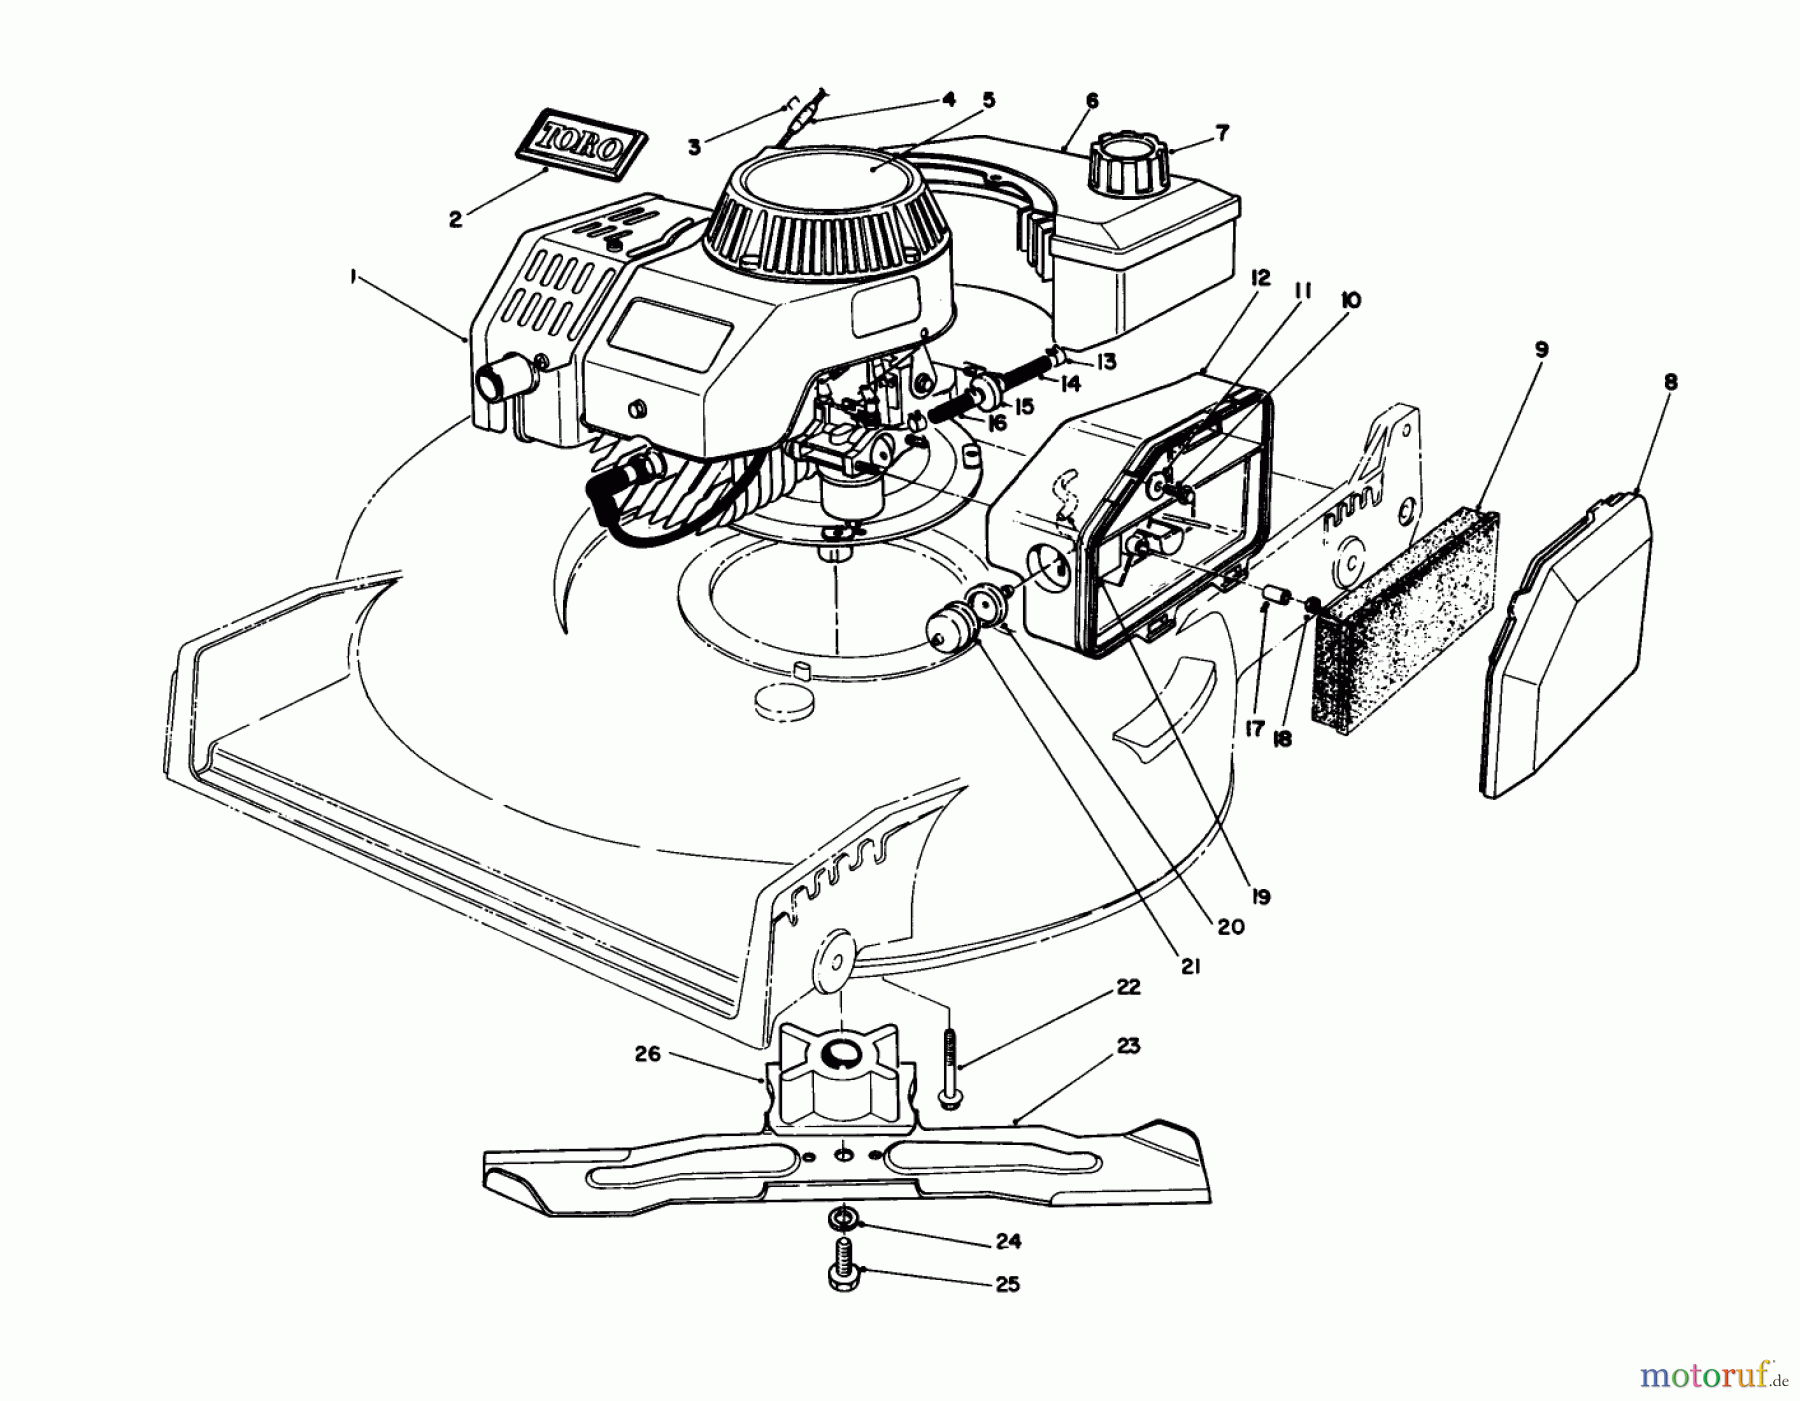  Toro Neu Mowers, Walk-Behind Seite 1 20581C - Toro Lawnmower, 1988 (8000001-8999999) ENGINE ASSEMBLY